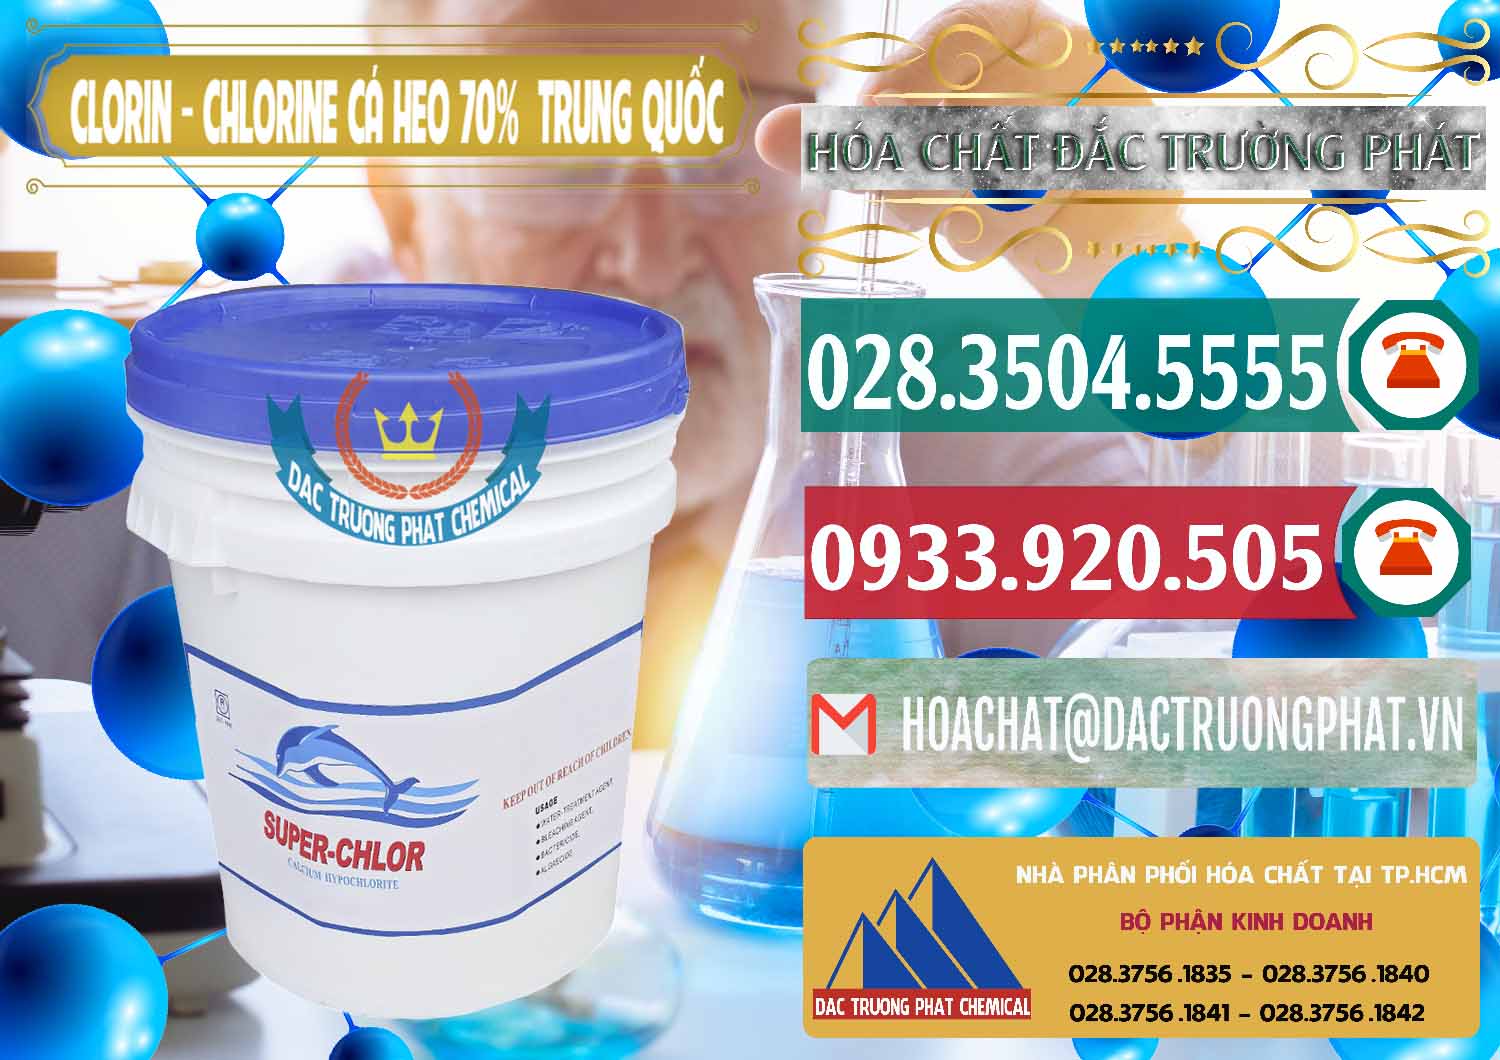 Nơi bán và cung ứng Clorin - Chlorine Cá Heo 70% Super Chlor Nắp Xanh Trung Quốc China - 0209 - Cung cấp - kinh doanh hóa chất tại TP.HCM - muabanhoachat.vn